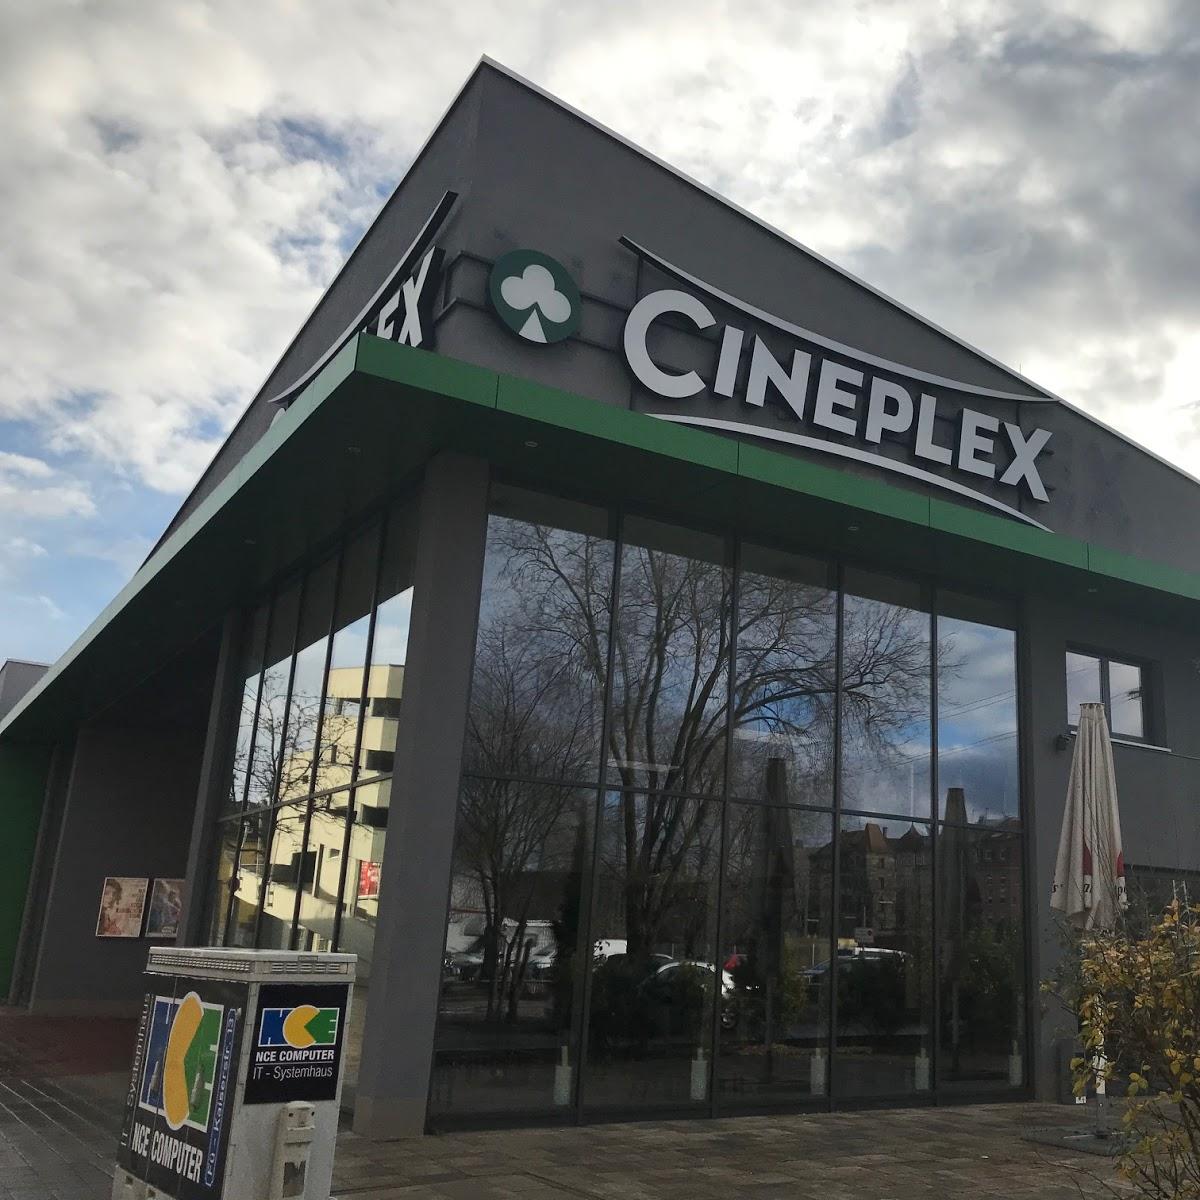 Restaurant "Cineplex" in Fürth